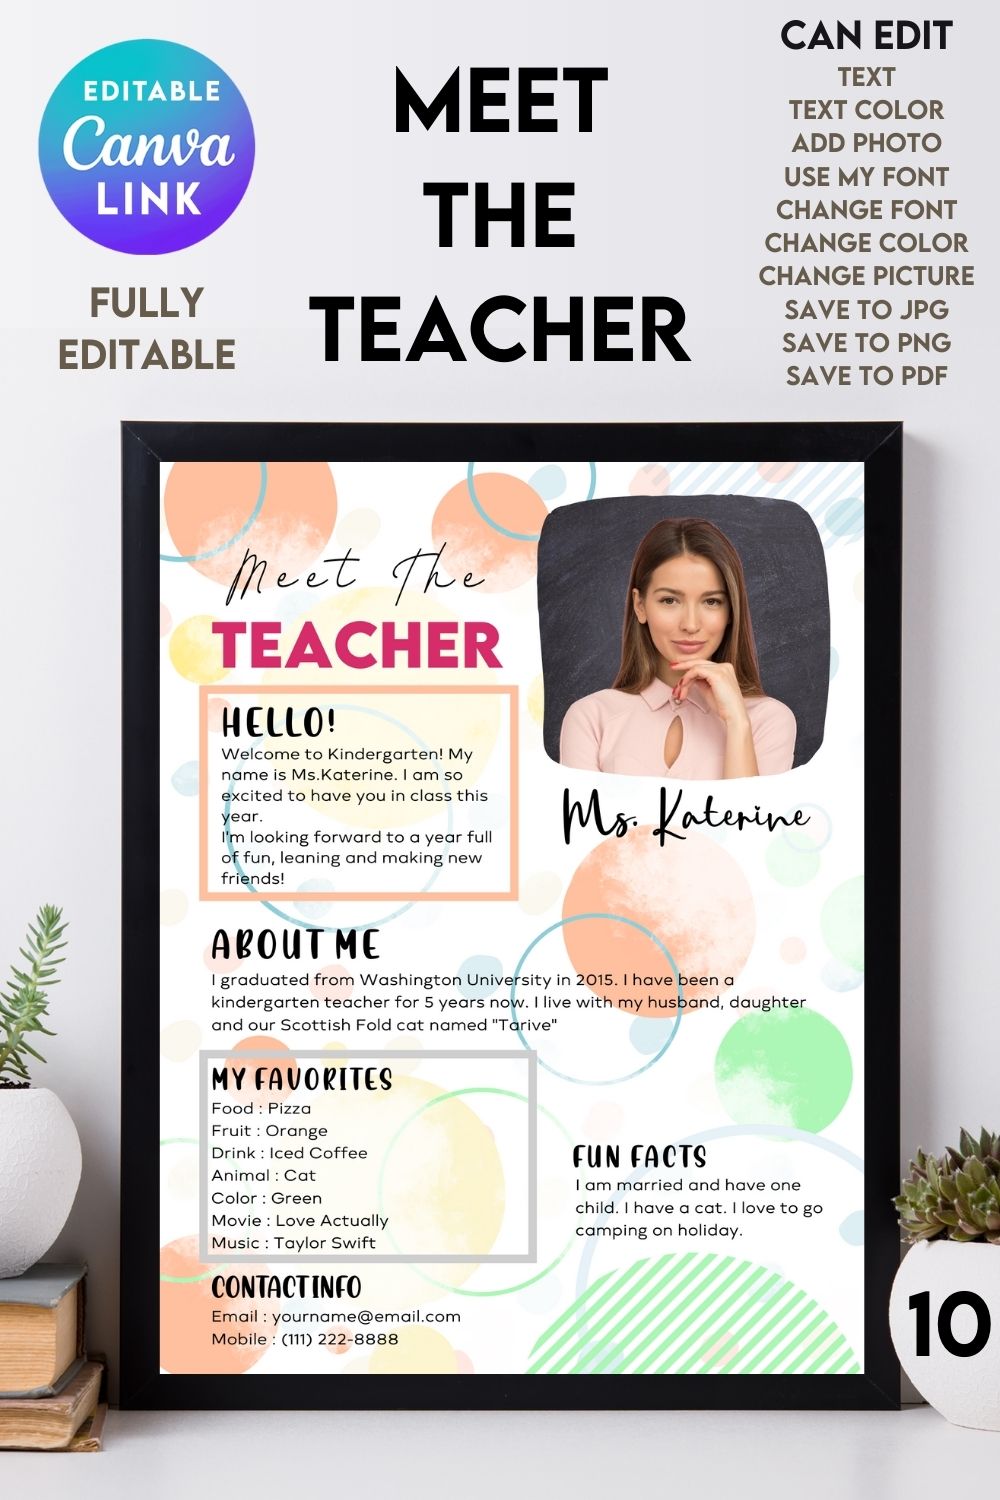 Meet The Teacher #10 – Canva Template pinterest preview image.